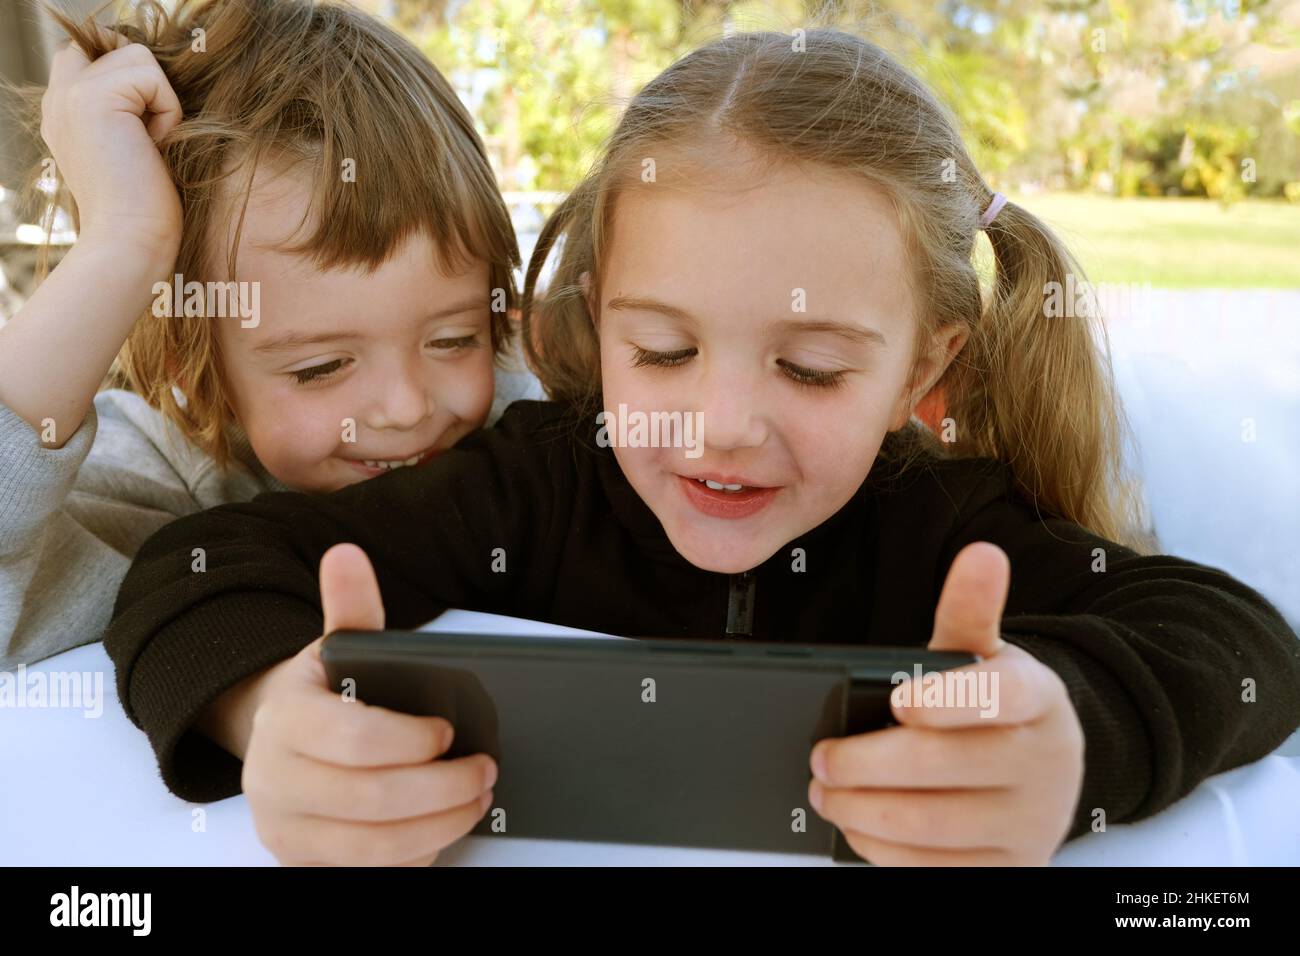 Petit garçon et fille jolis frères et sœurs en utilisant le téléphone intelligent jouant des jeux vidéo, regardez les dessins animés discuter de la nouvelle application mobile drôle cool, s'amuser sur la semaine Banque D'Images